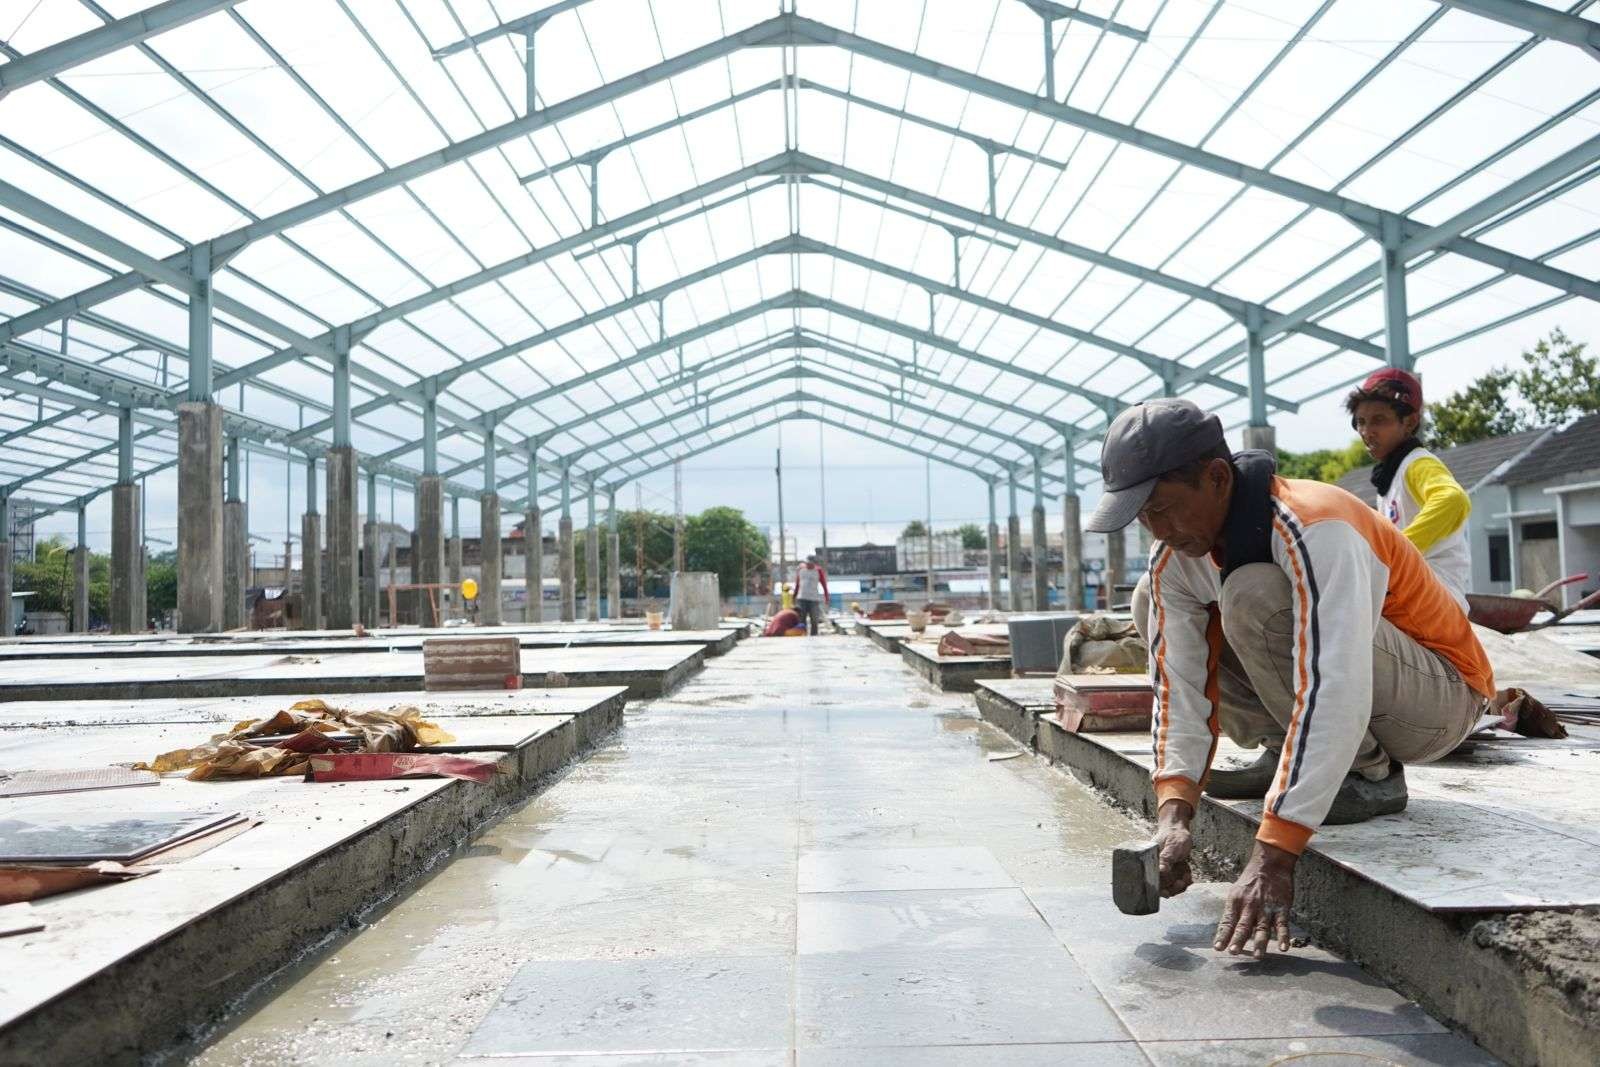 Bupati Kediri Hanindhito Himawan Pramana mengingatkan setiap pekerjaan proyek pembangunan di lingkungan Pemkab Kediri harus dievaluasi.(Foto: Kominfo Kabupaten Kediri)